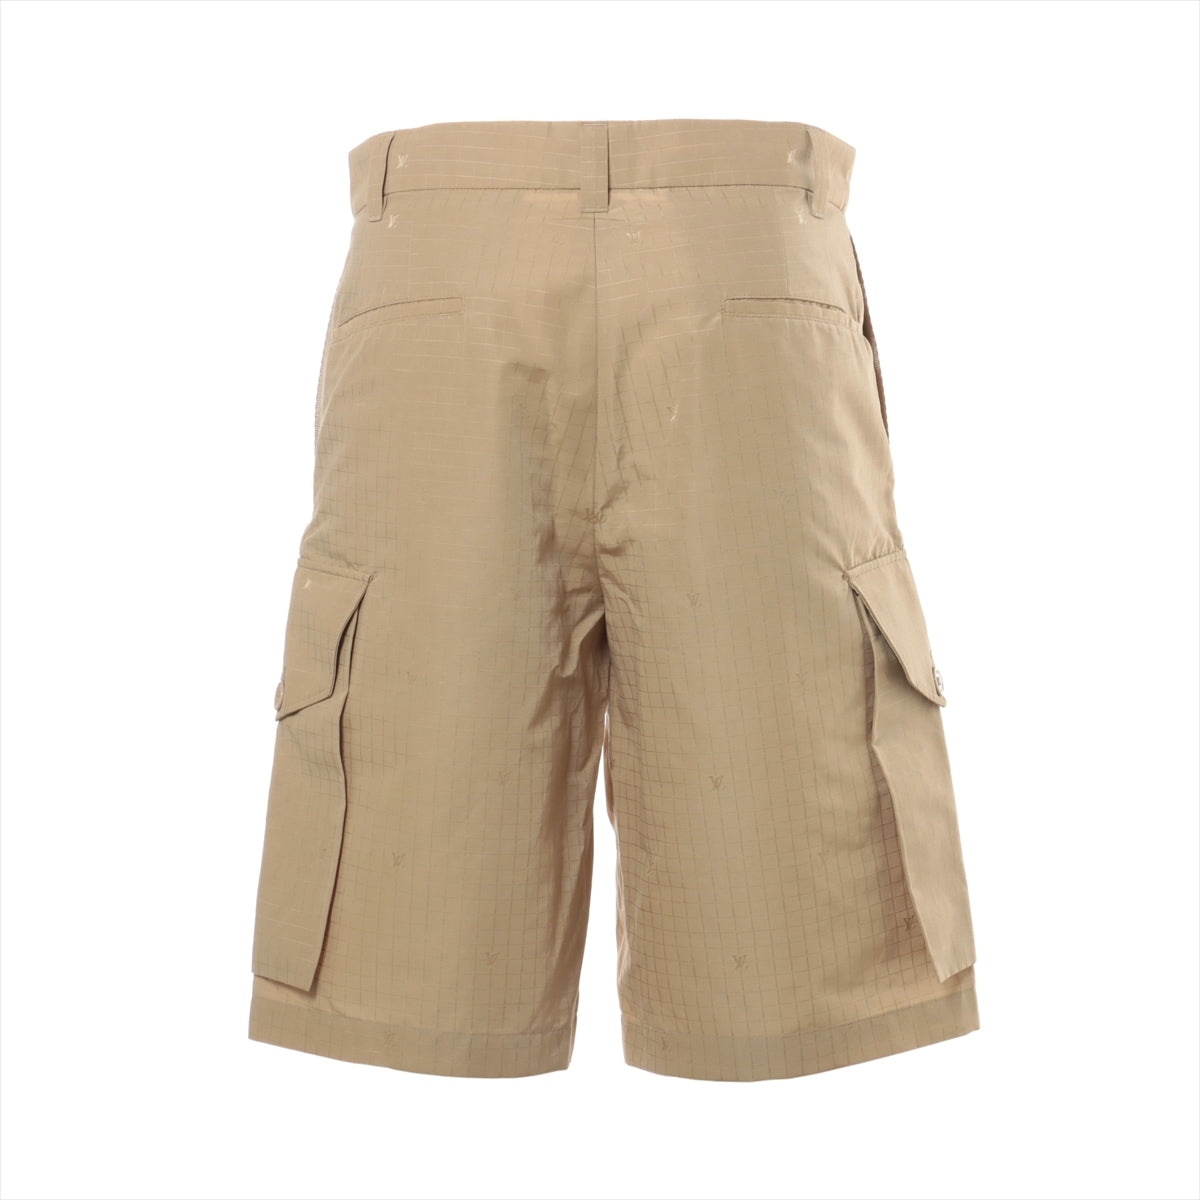 Louis Vuitton 23AW Cotton & nylon Short pants 46 Men's Beige  RM232M Monogram